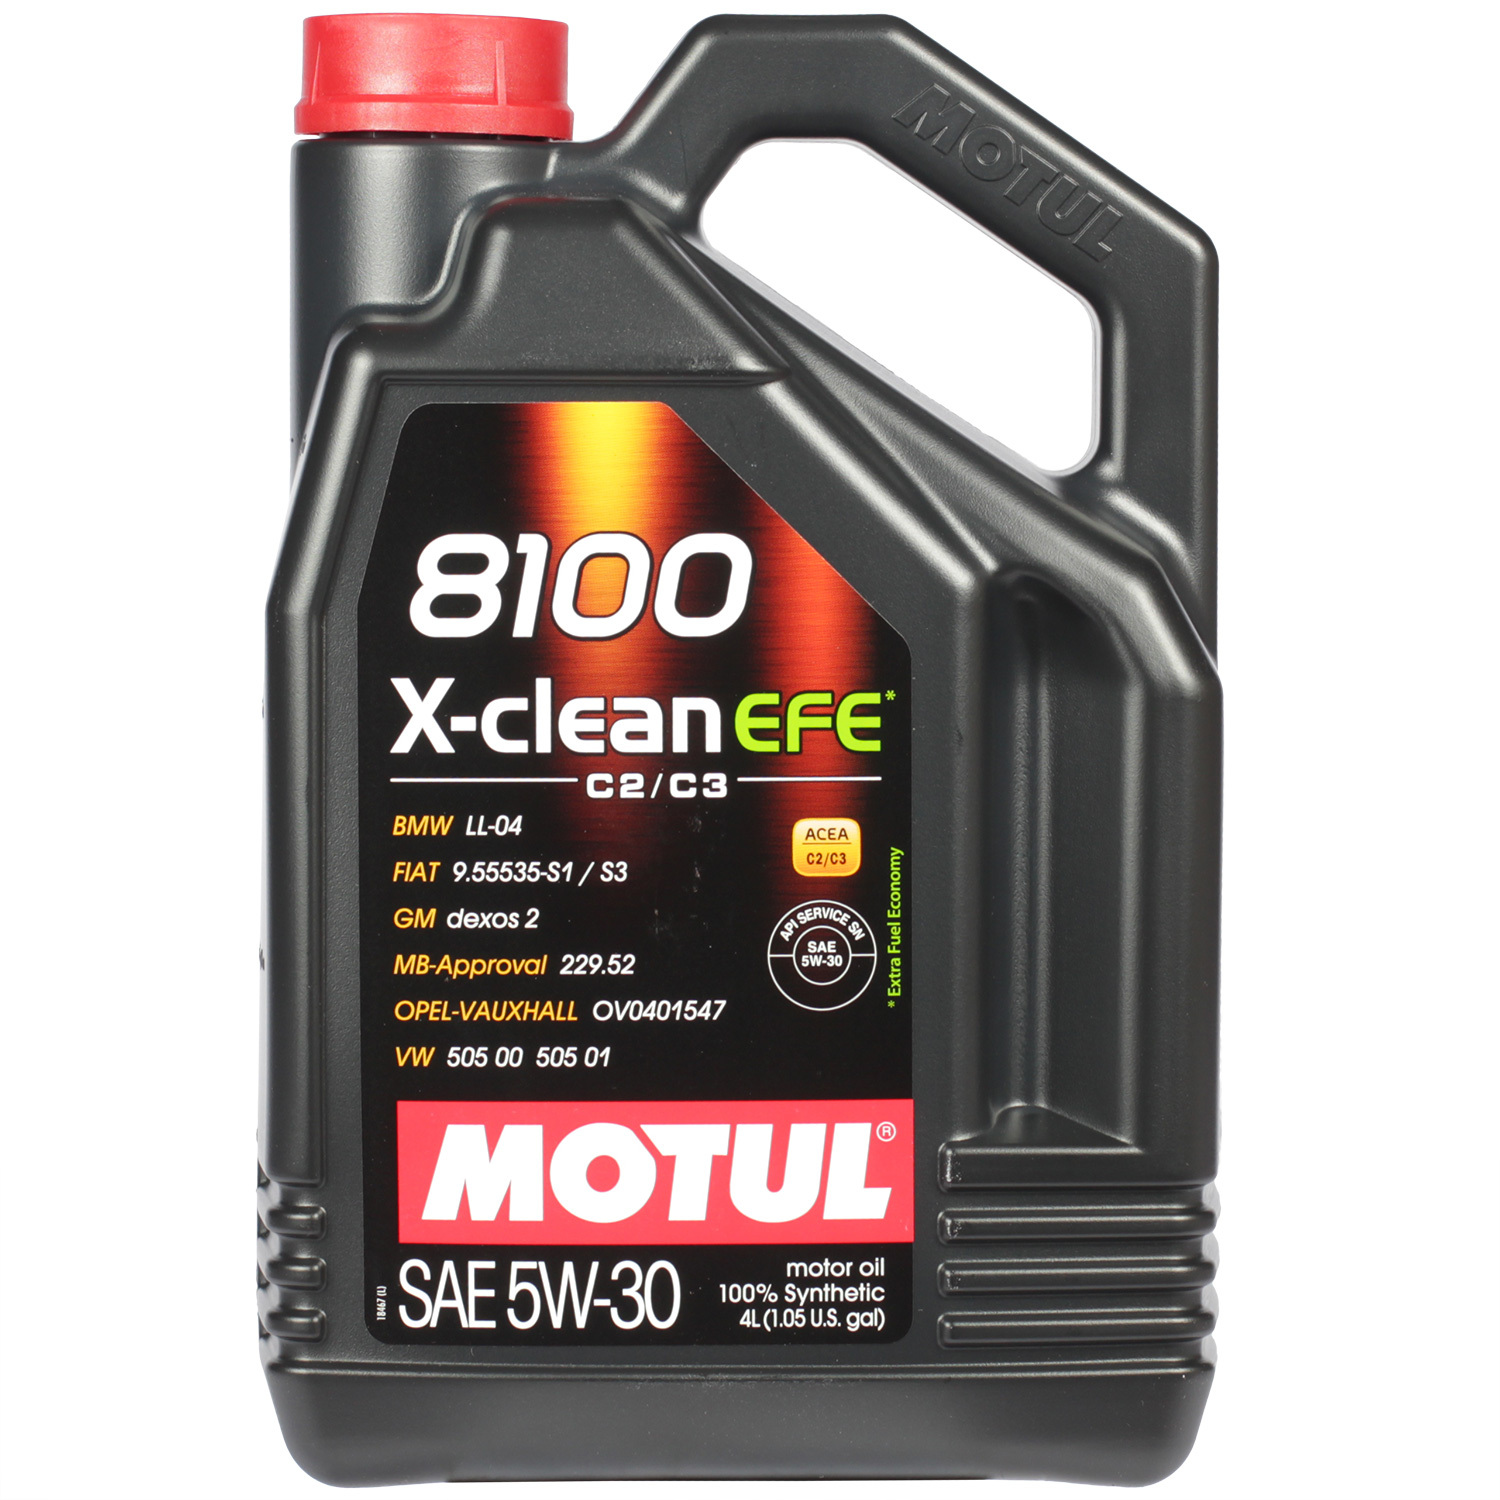 Motul Моторное масло Motul 8100 X-clean EFE 5W-30, 4 л масло моторное motul 8100 x clean efe 5w 30 синтетическое 5 л